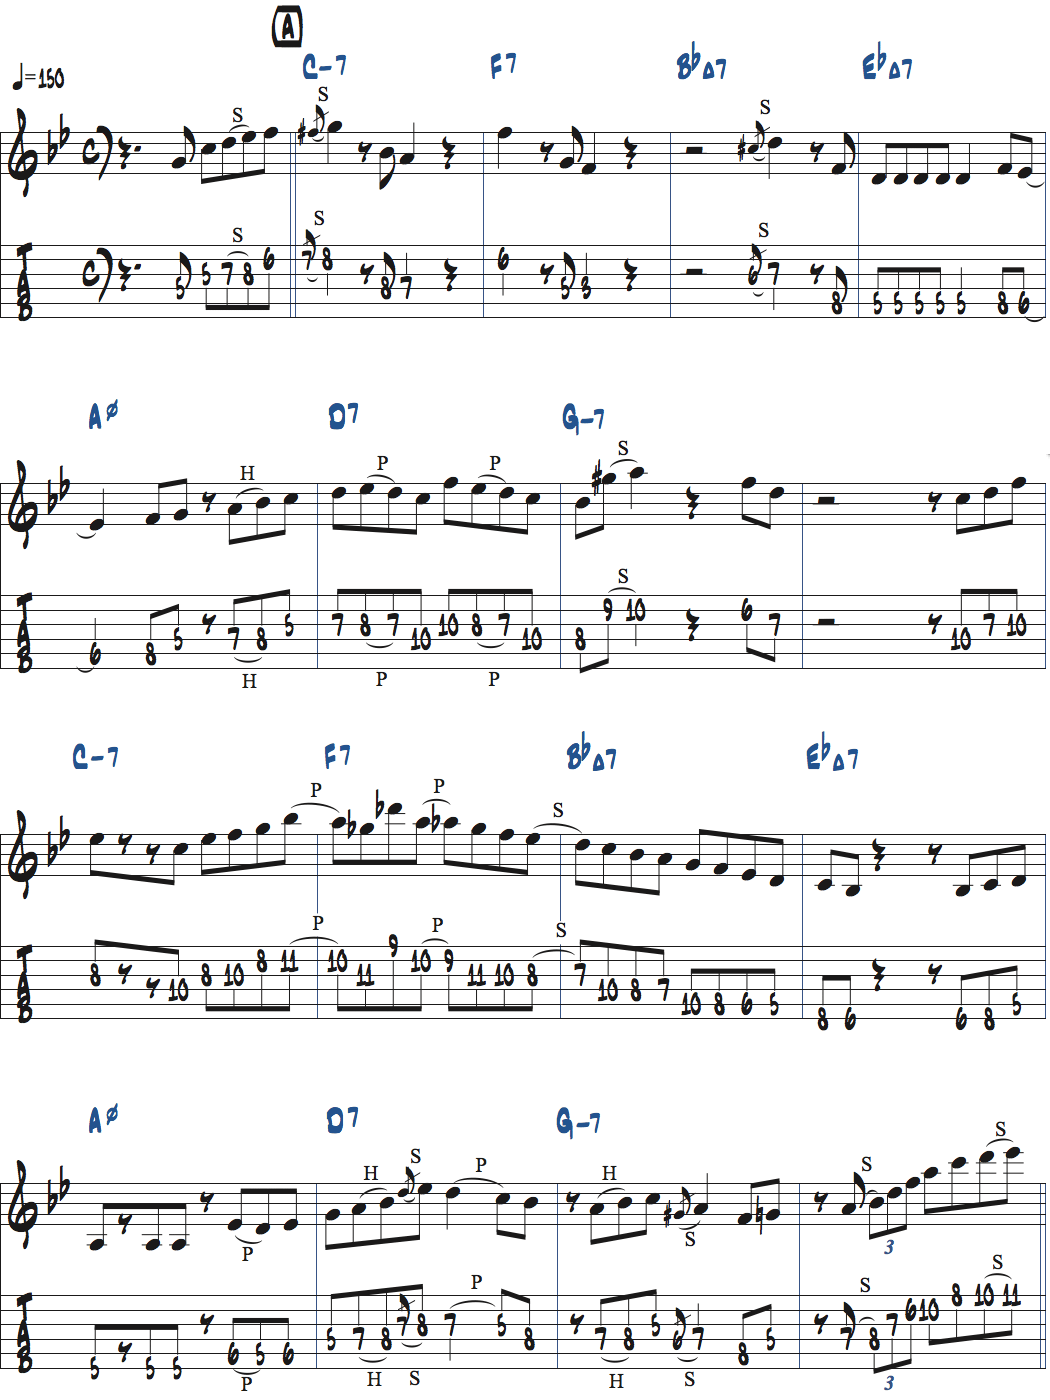 枯葉のアドリブ例楽譜ページ1